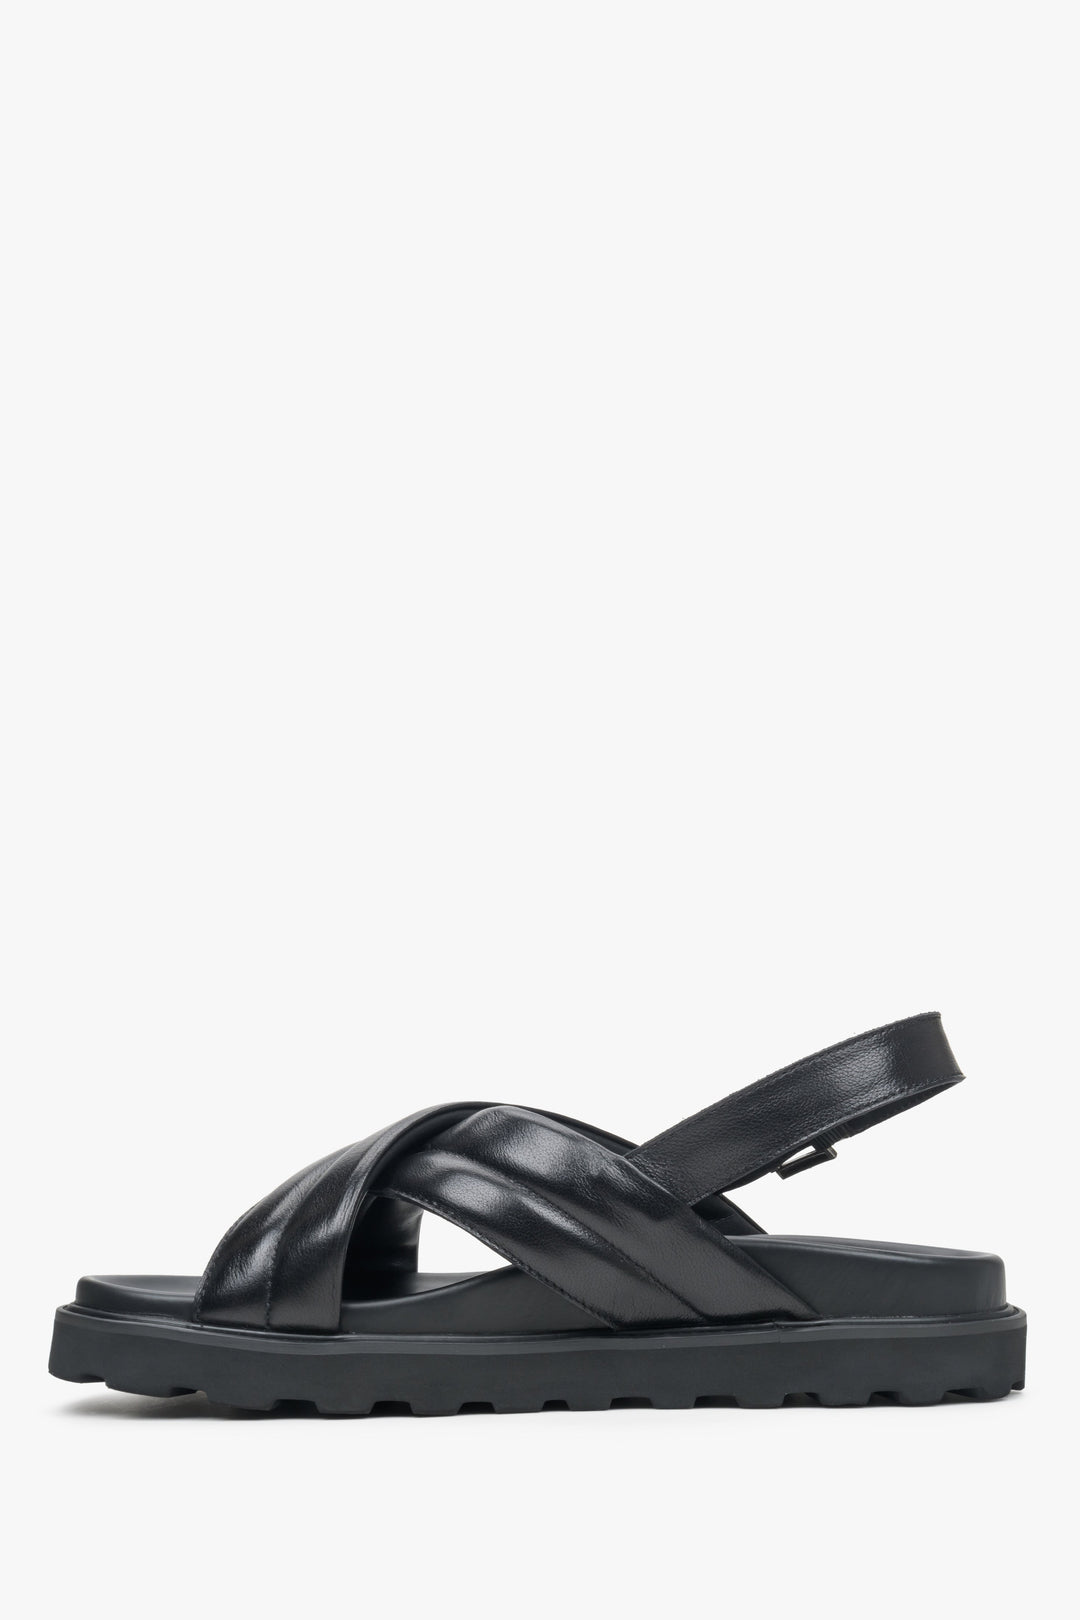 Estro  men's black leather sandals with cross straps - shoe profile.